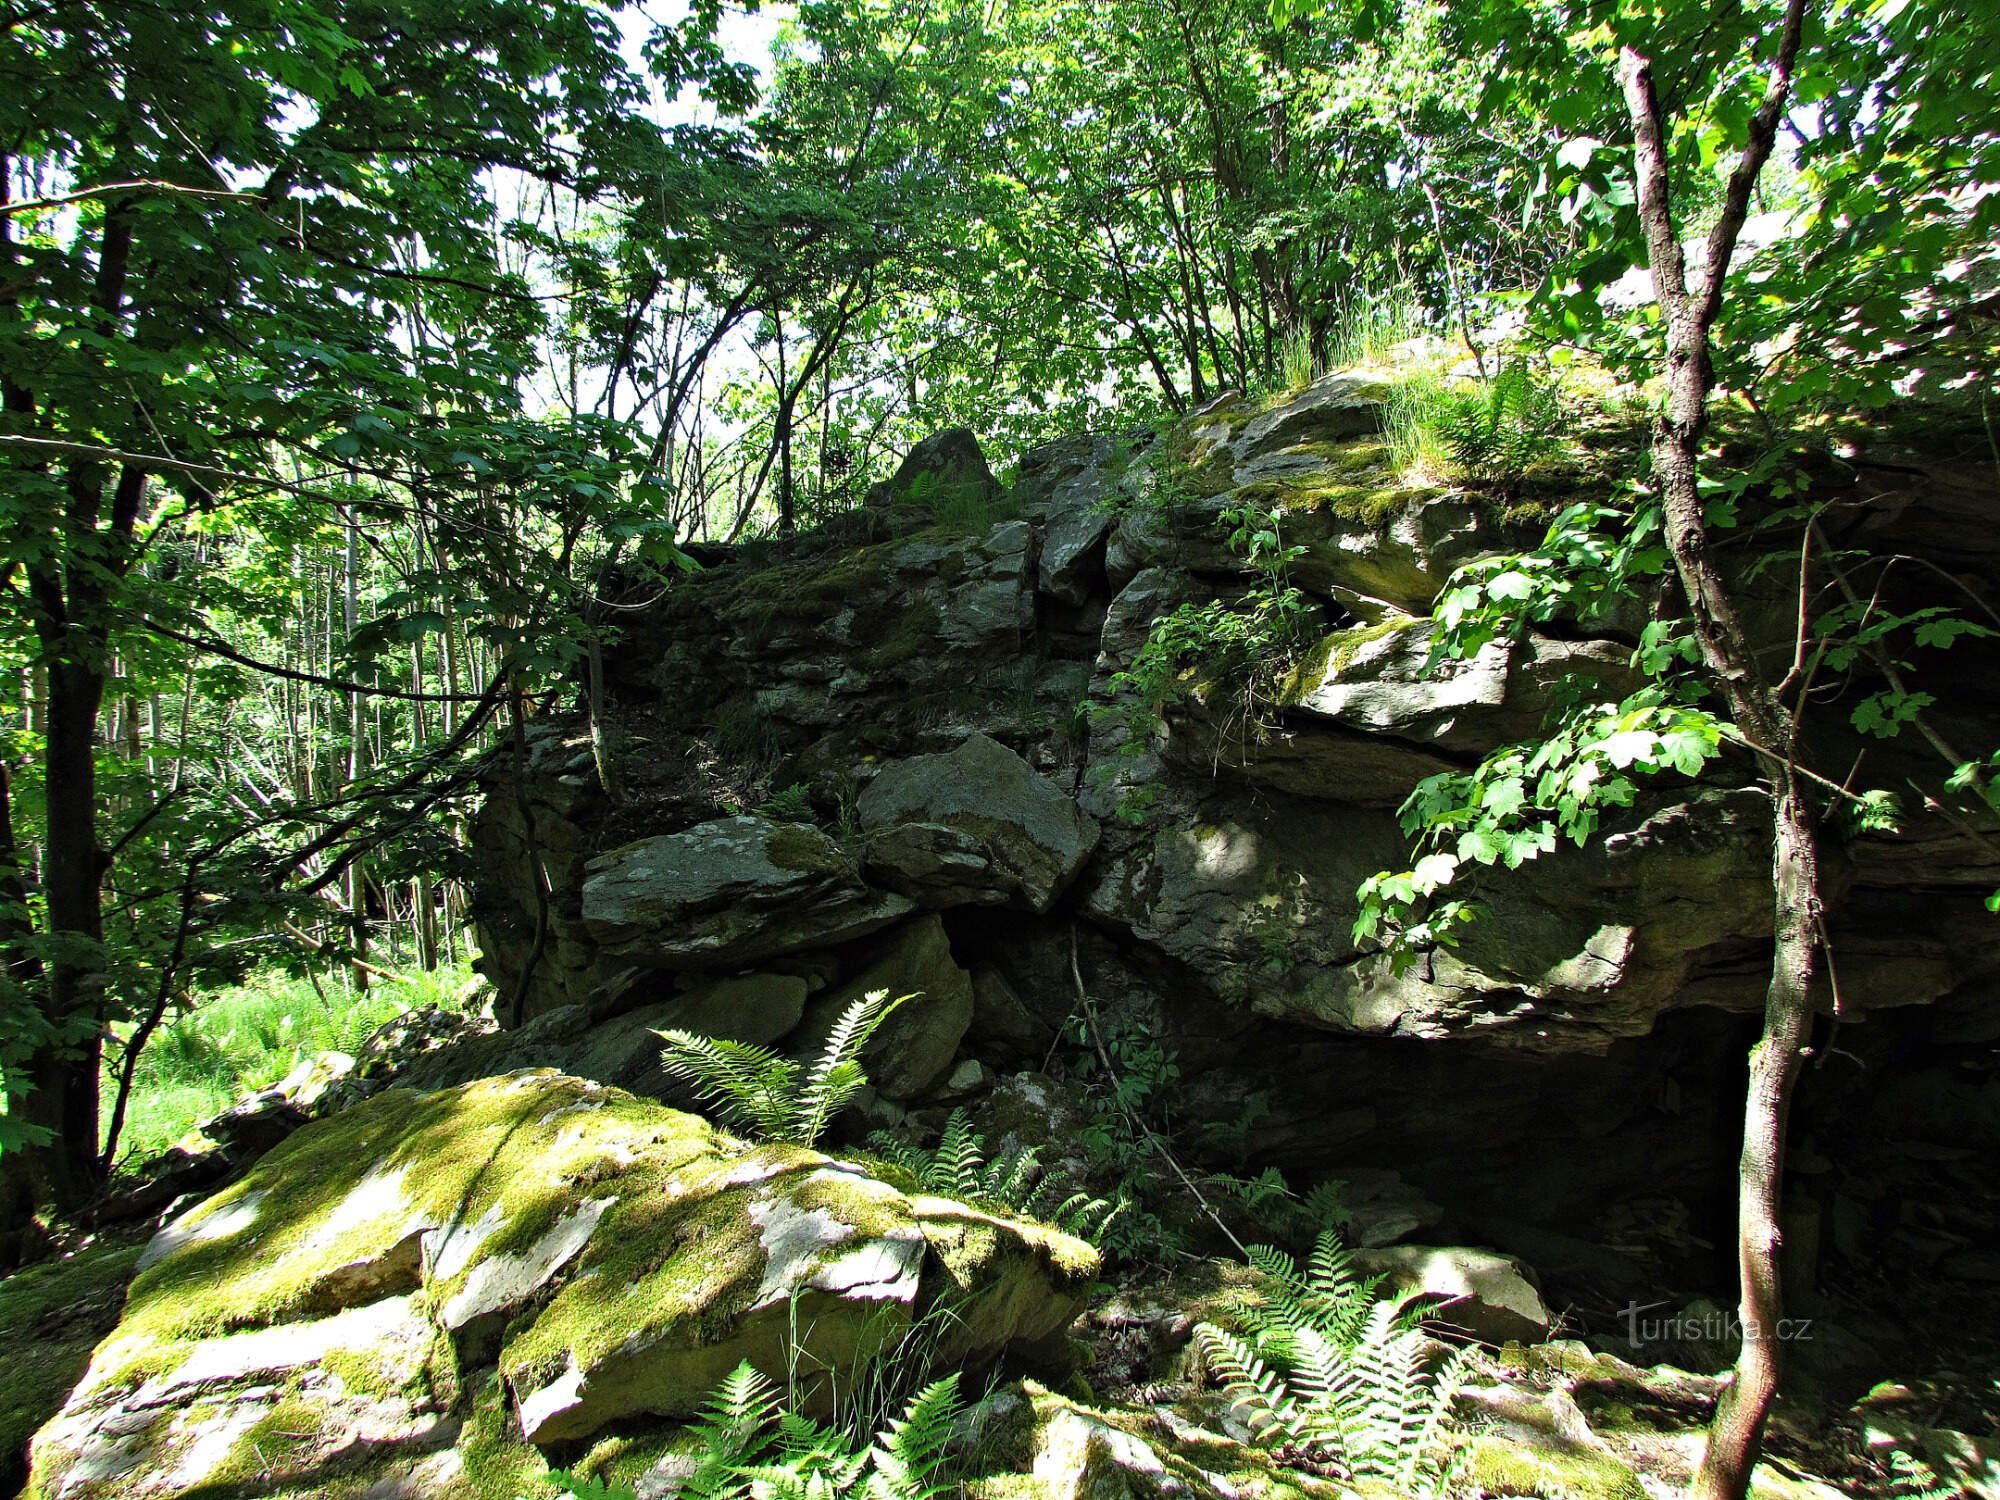 the rock of Malé Sýkoř